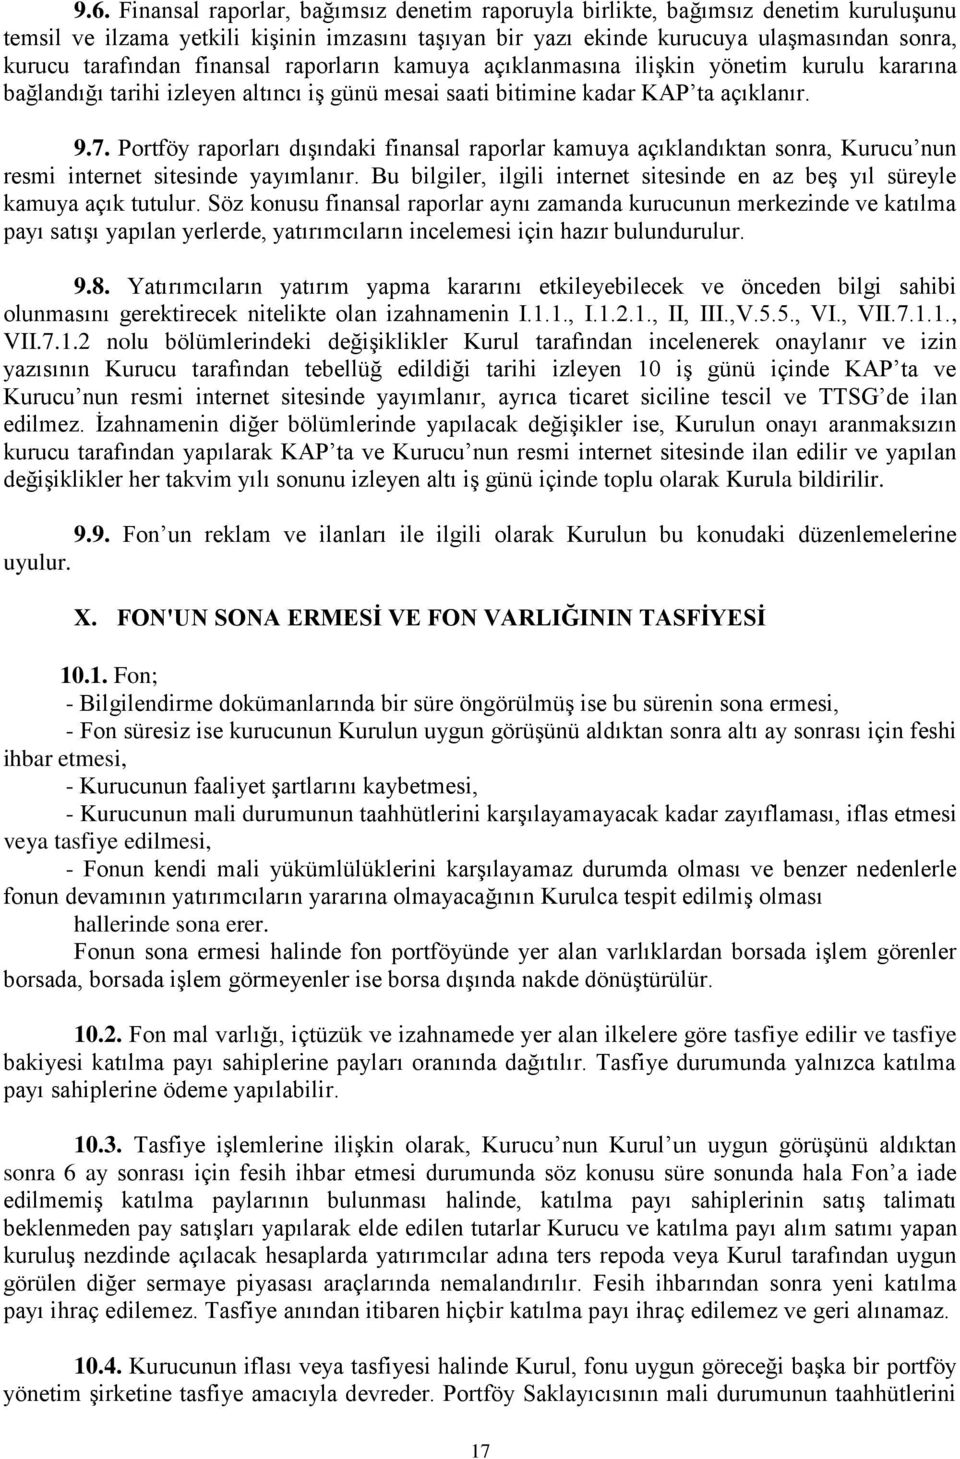 Portföy raporları dışındaki finansal raporlar kamuya açıklandıktan sonra, Kurucu nun resmi internet sitesinde yayımlanır.